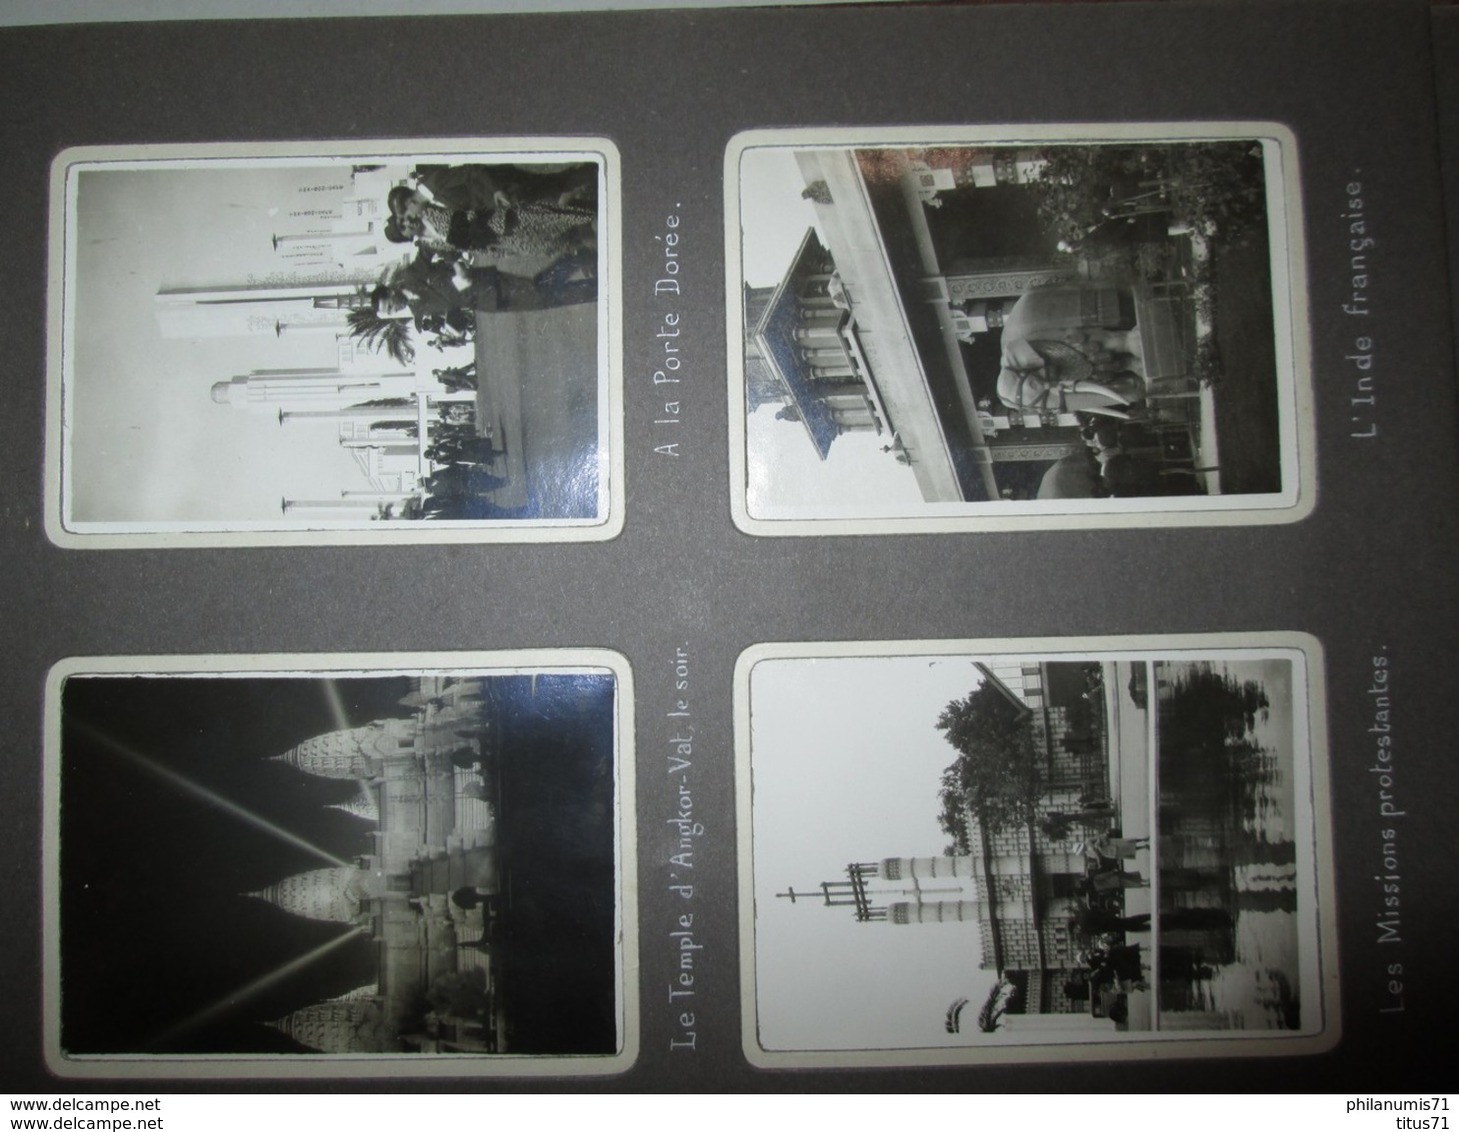 Album de 96 Photos originales de l'Exposition Coloniale de Paris en 1931 - Photos 5,5 X 8,5 toutes légendées